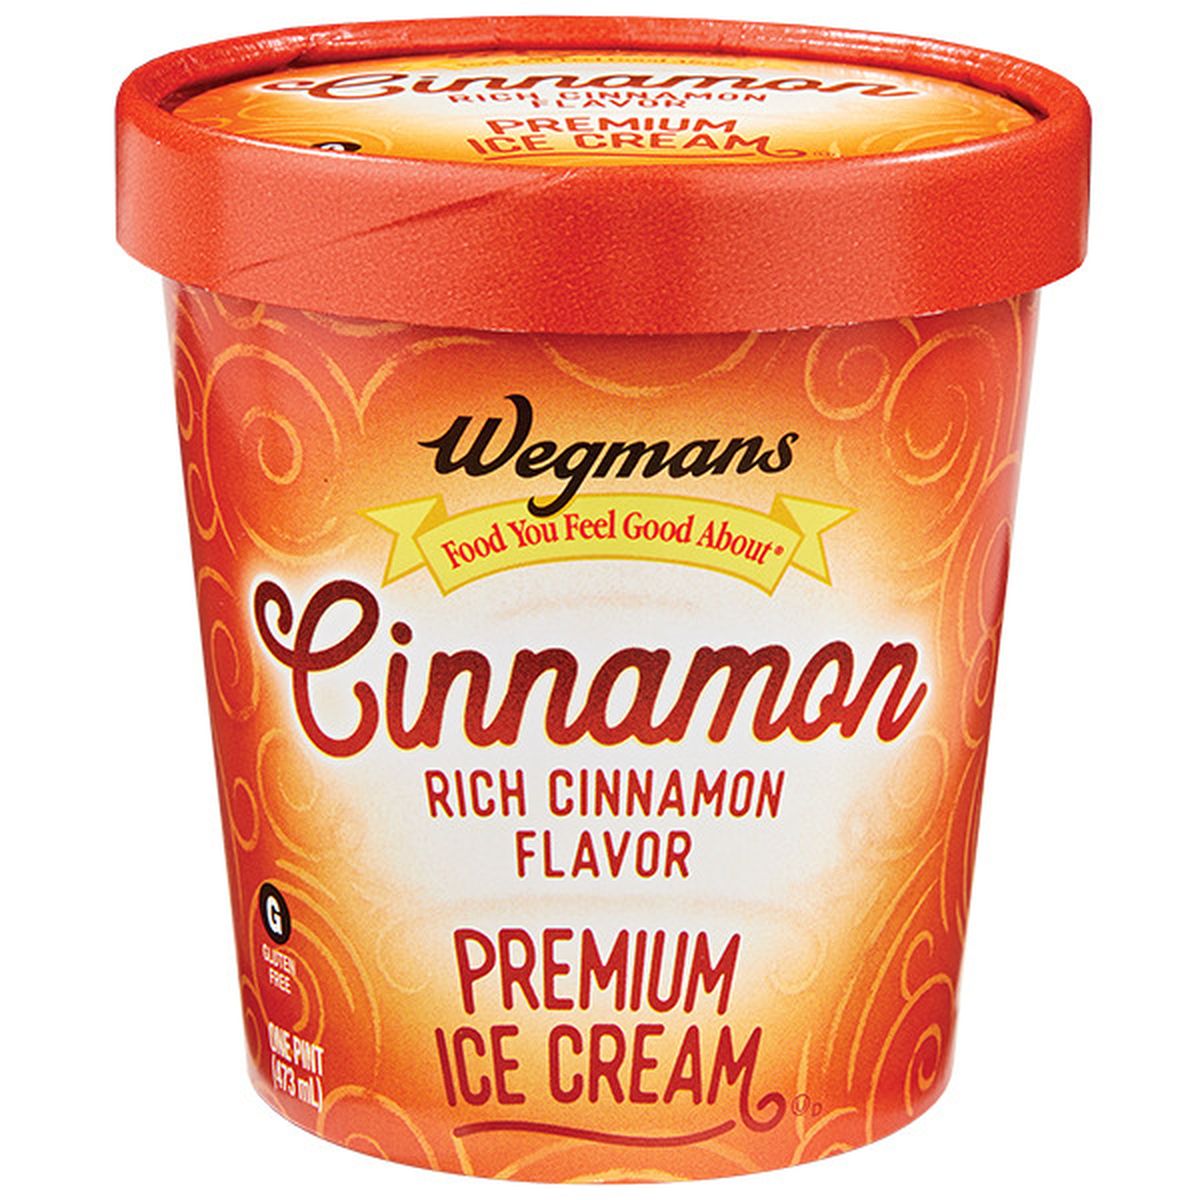 Calories in Wegmans Cinnamon Premium Ice Cream